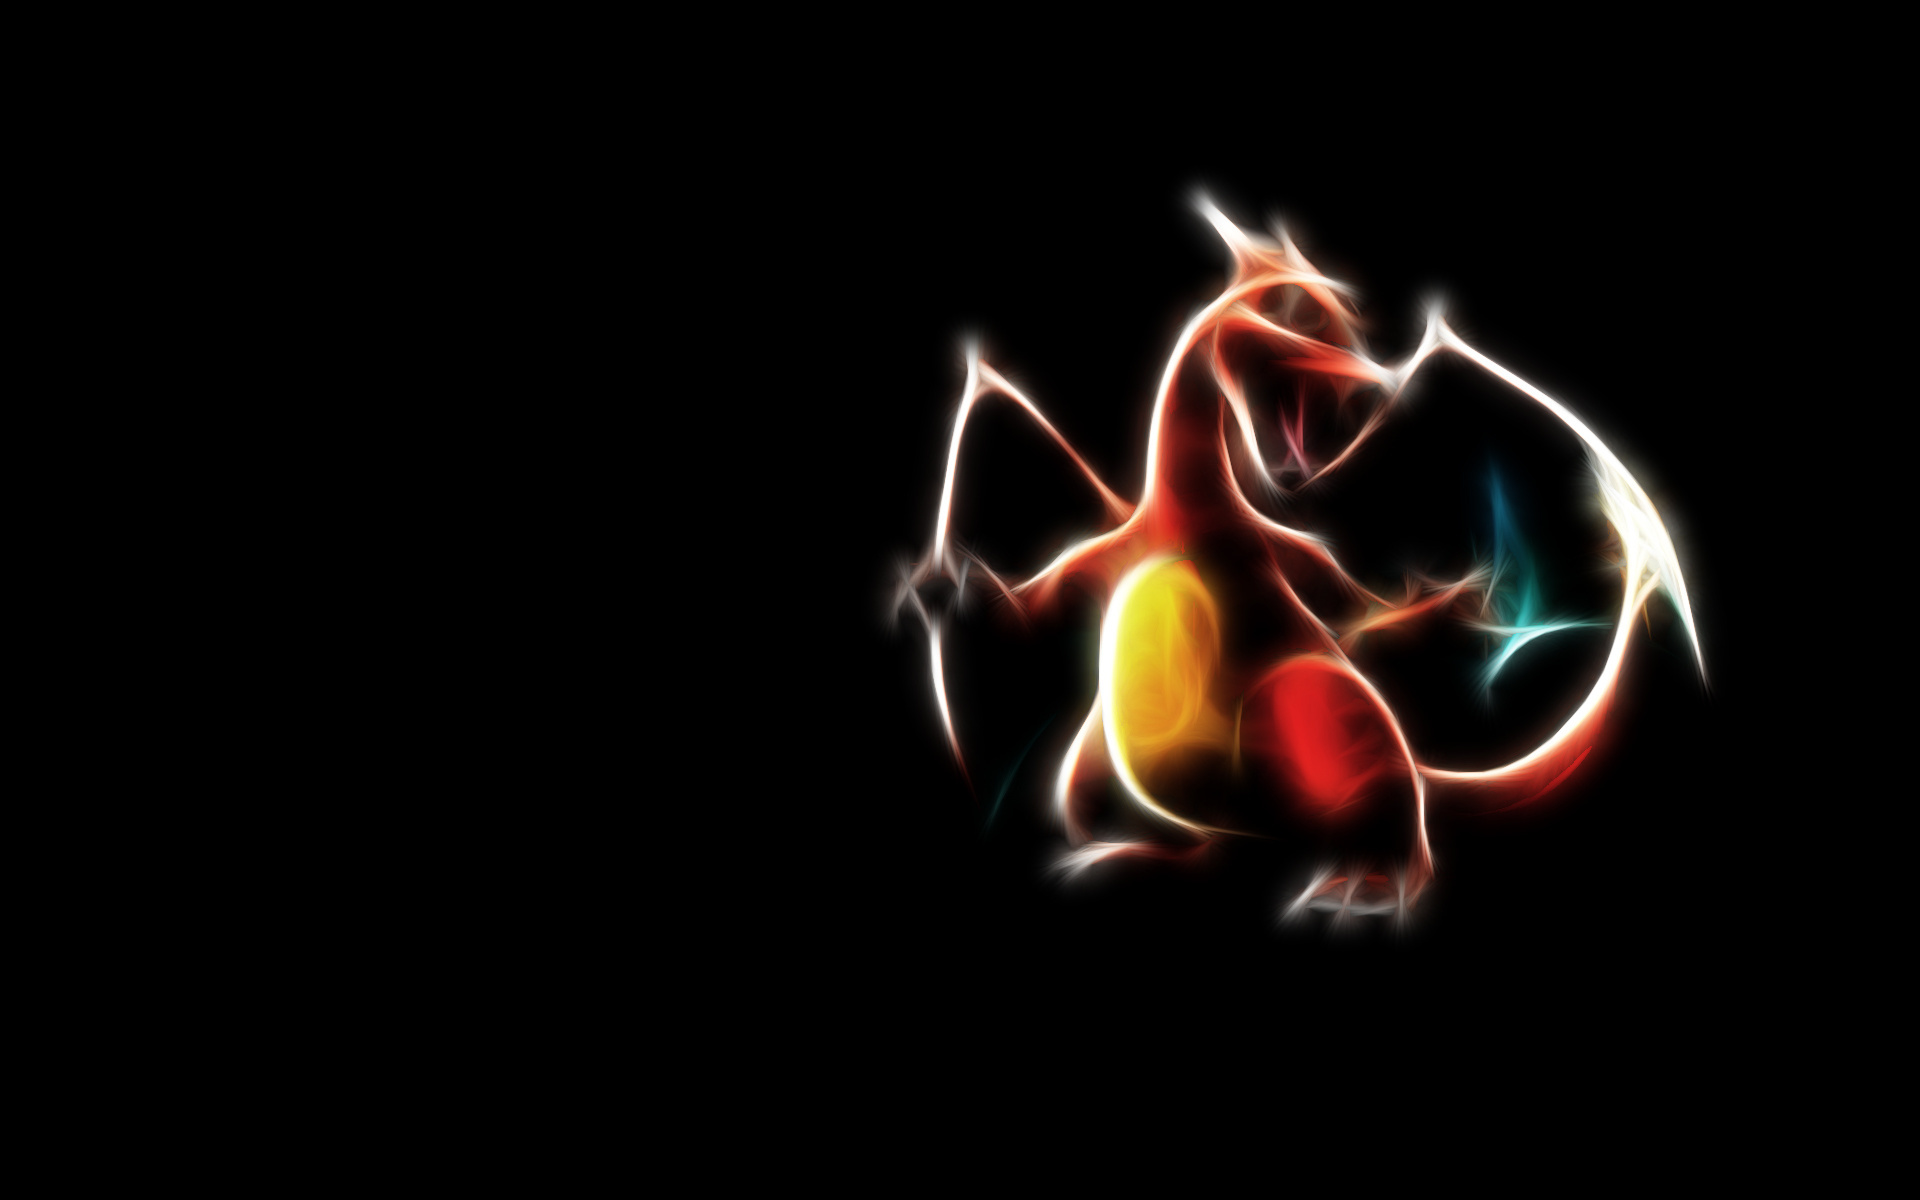 Pokemon Free Download Image Wallpaper, Size: 1920x1200 ...